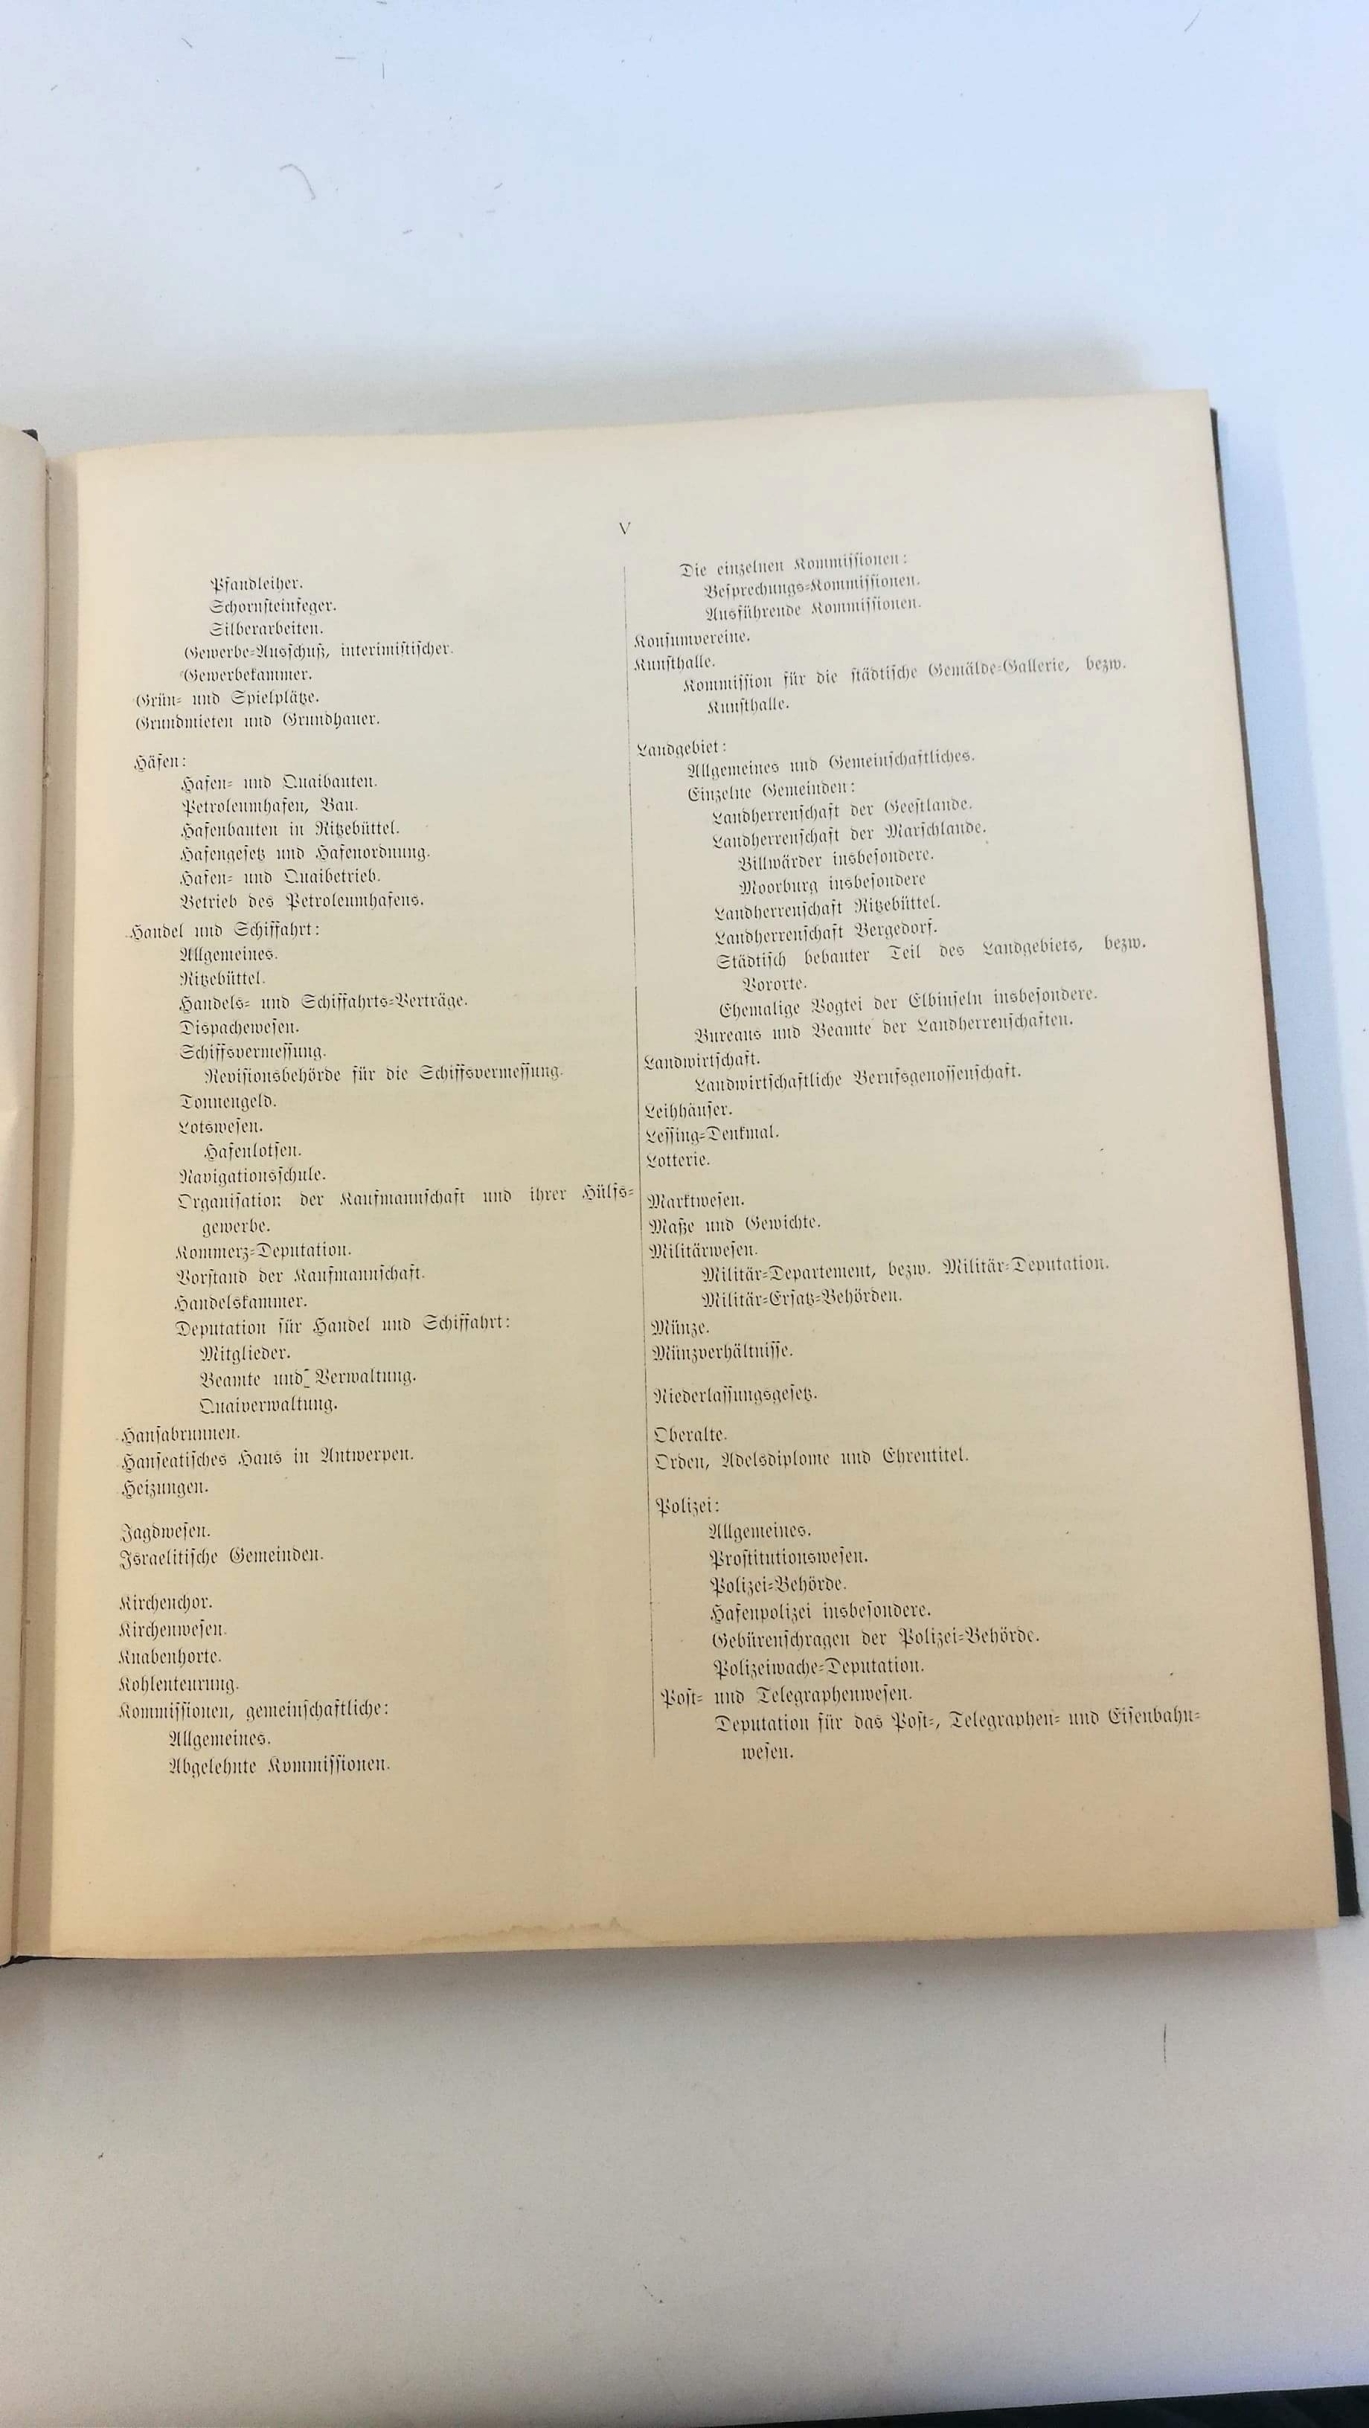 ohne Autor: Inhaltsverzeichnis zu den Protokollen der Bürgeschaft in den Jahren 1859 bis 1900